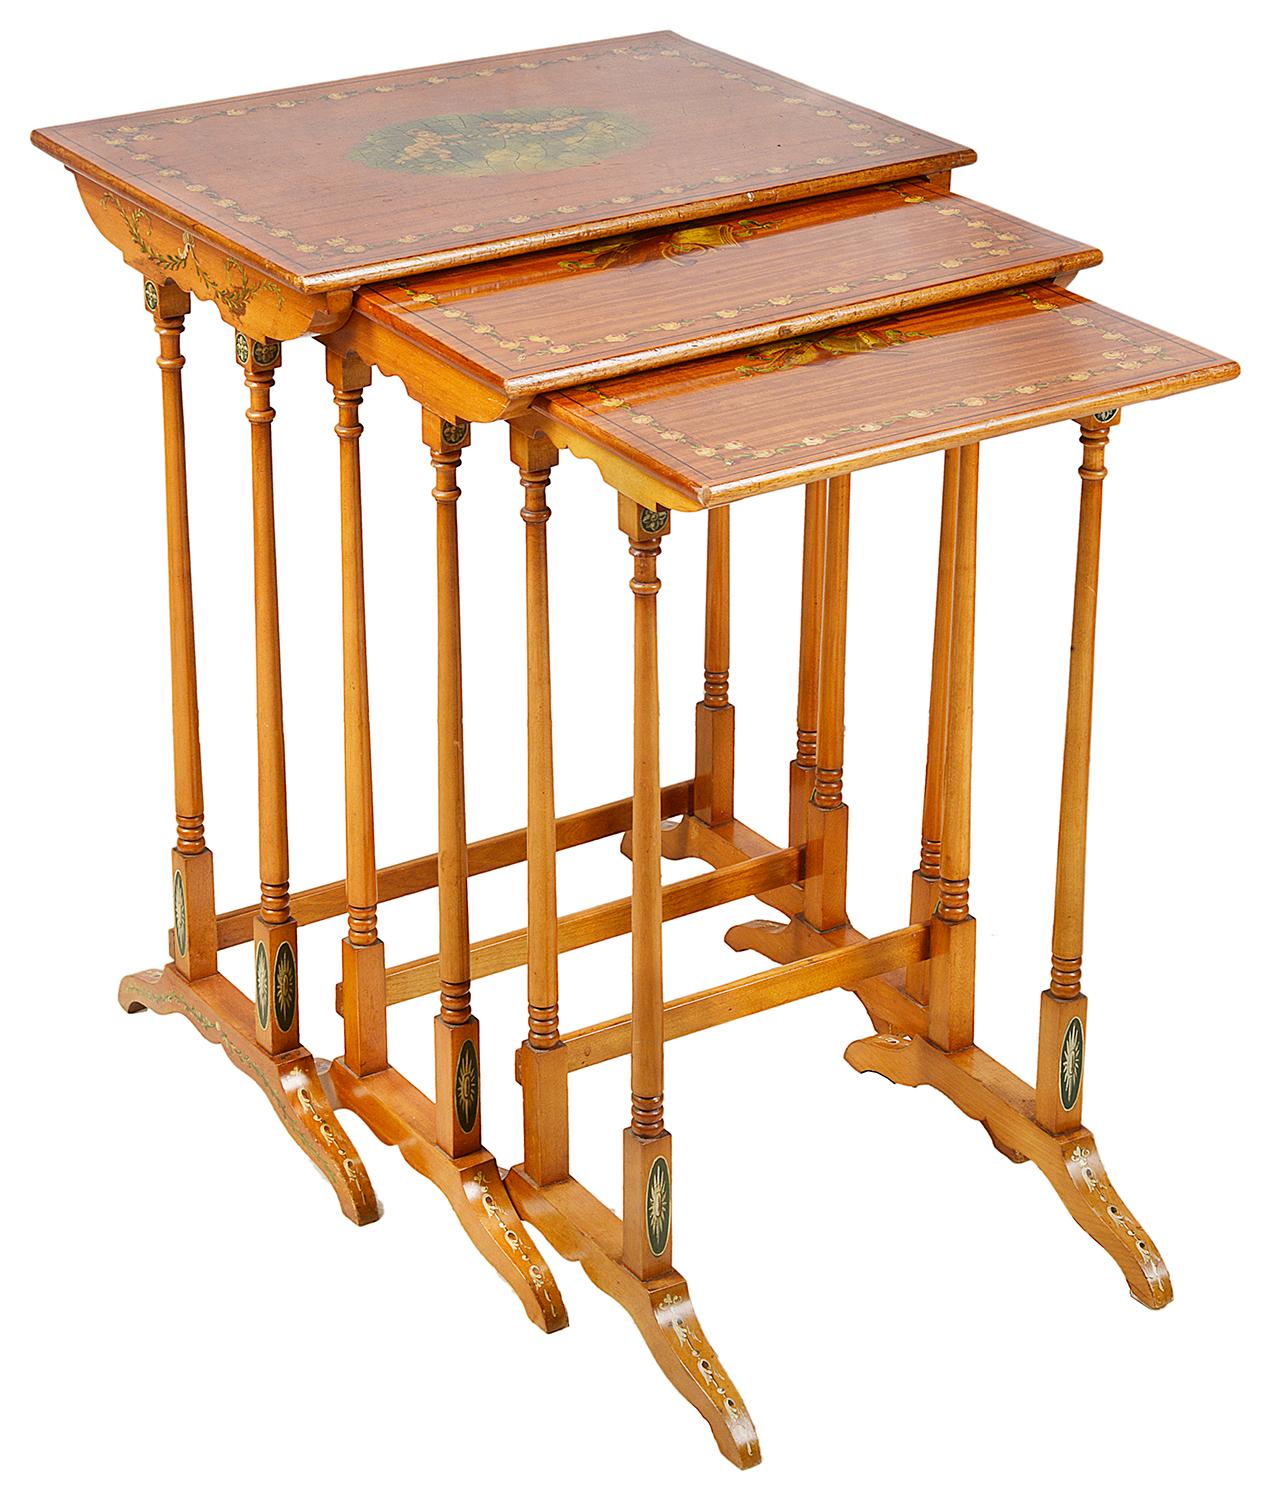 Eine gute Qualität Nest von drei Satinholz Sheraton Wiederbelebung Tabellen, die jeweils mit klassischen handgemalten Dekoration, Darstellung von Musikinstrumenten und Cherubinen.